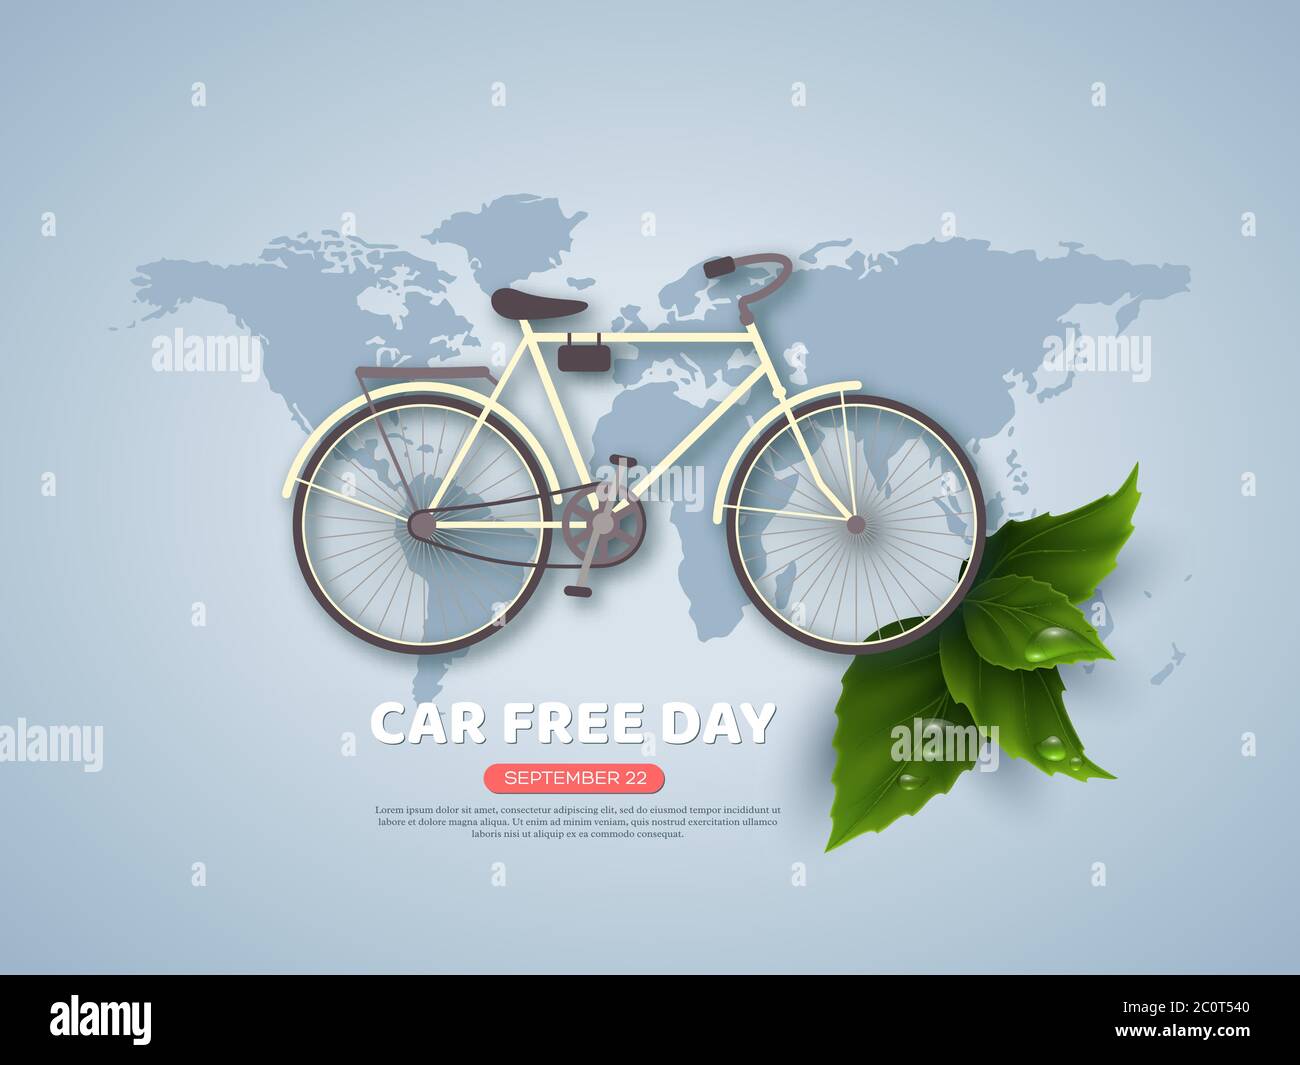 Auto frei Tag Urlaub Banner oder Poster. Papier geschnitten Stil Fahrrad, realistische Blätter mit Wassertropfen. Weltkarte blau Farbe Hintergrund, Vektor Stock Vektor